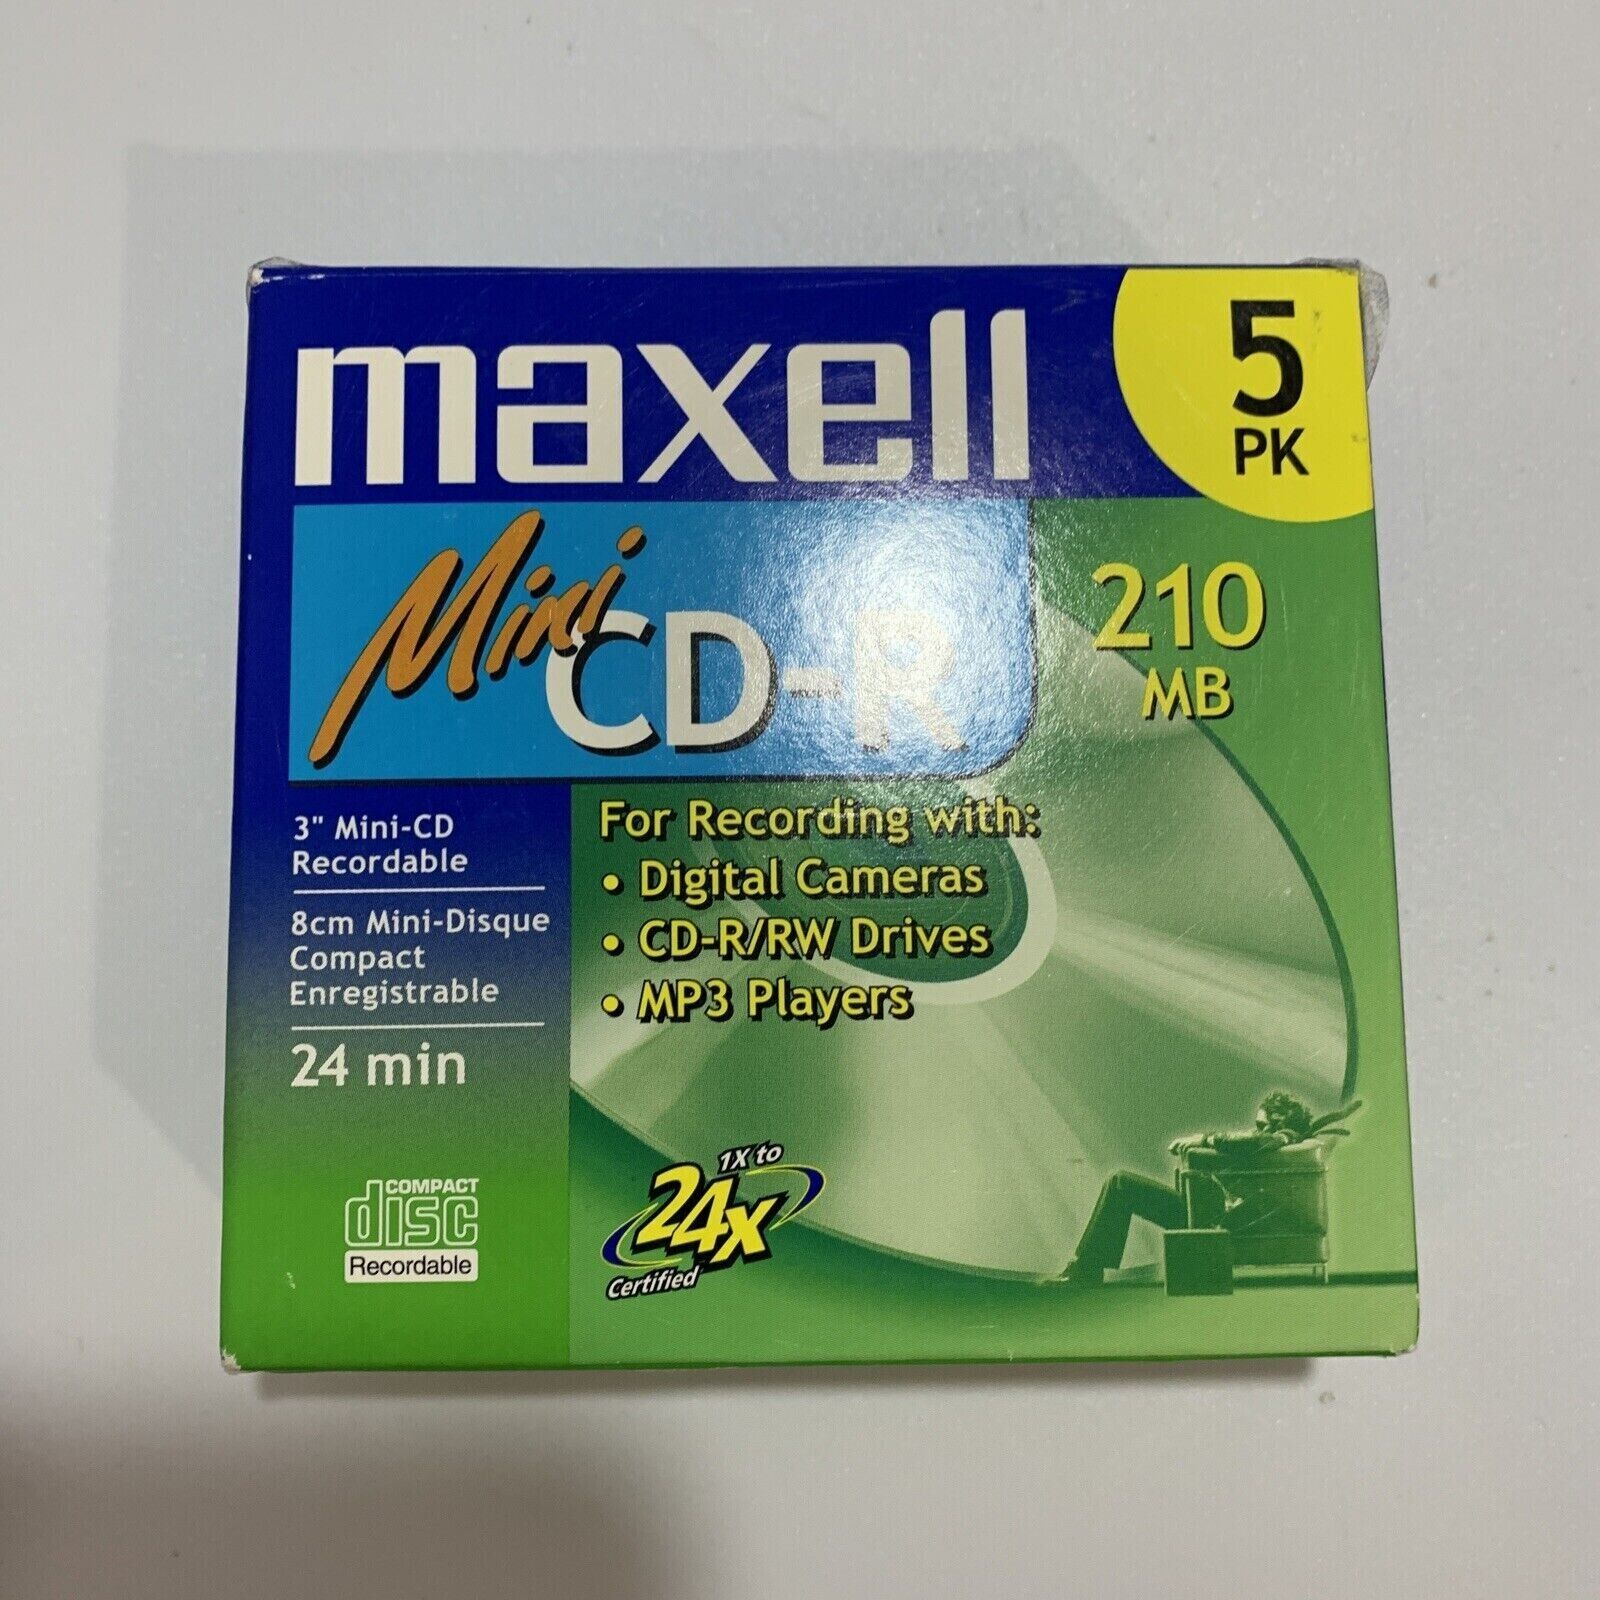 5 Pack Maxell Mini CD-R 210 MB 24 Min NEW SEALED